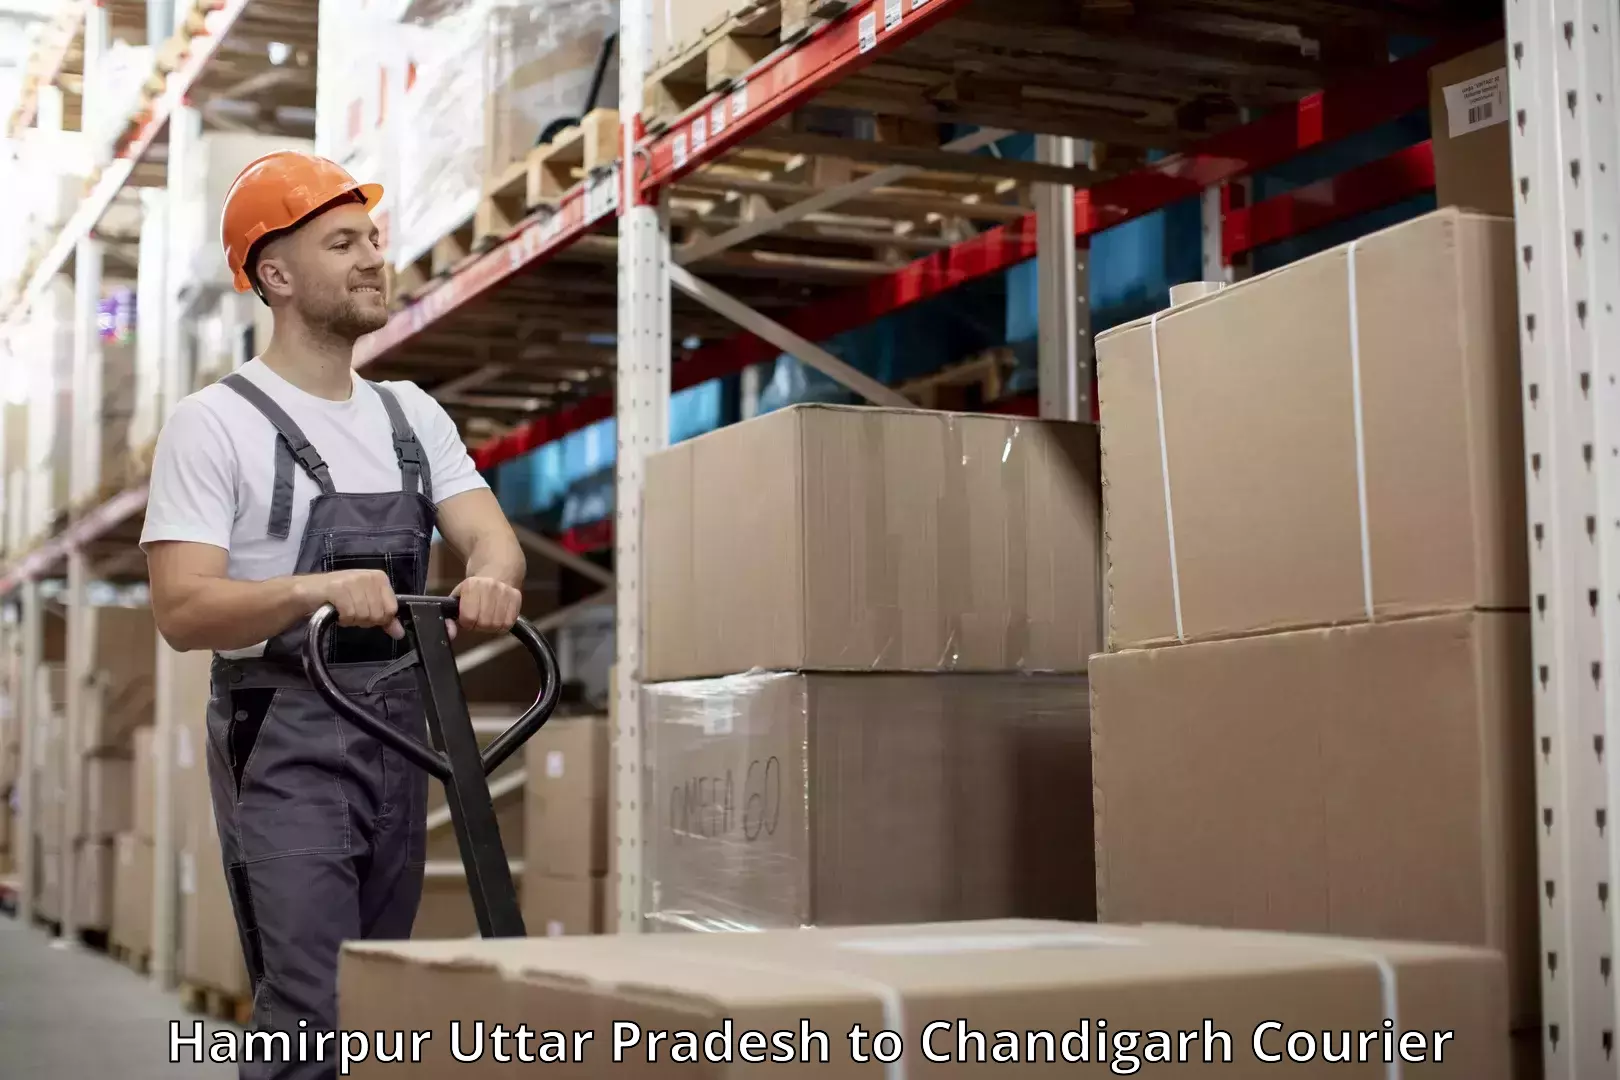 Baggage transport scheduler Hamirpur Uttar Pradesh to Chandigarh